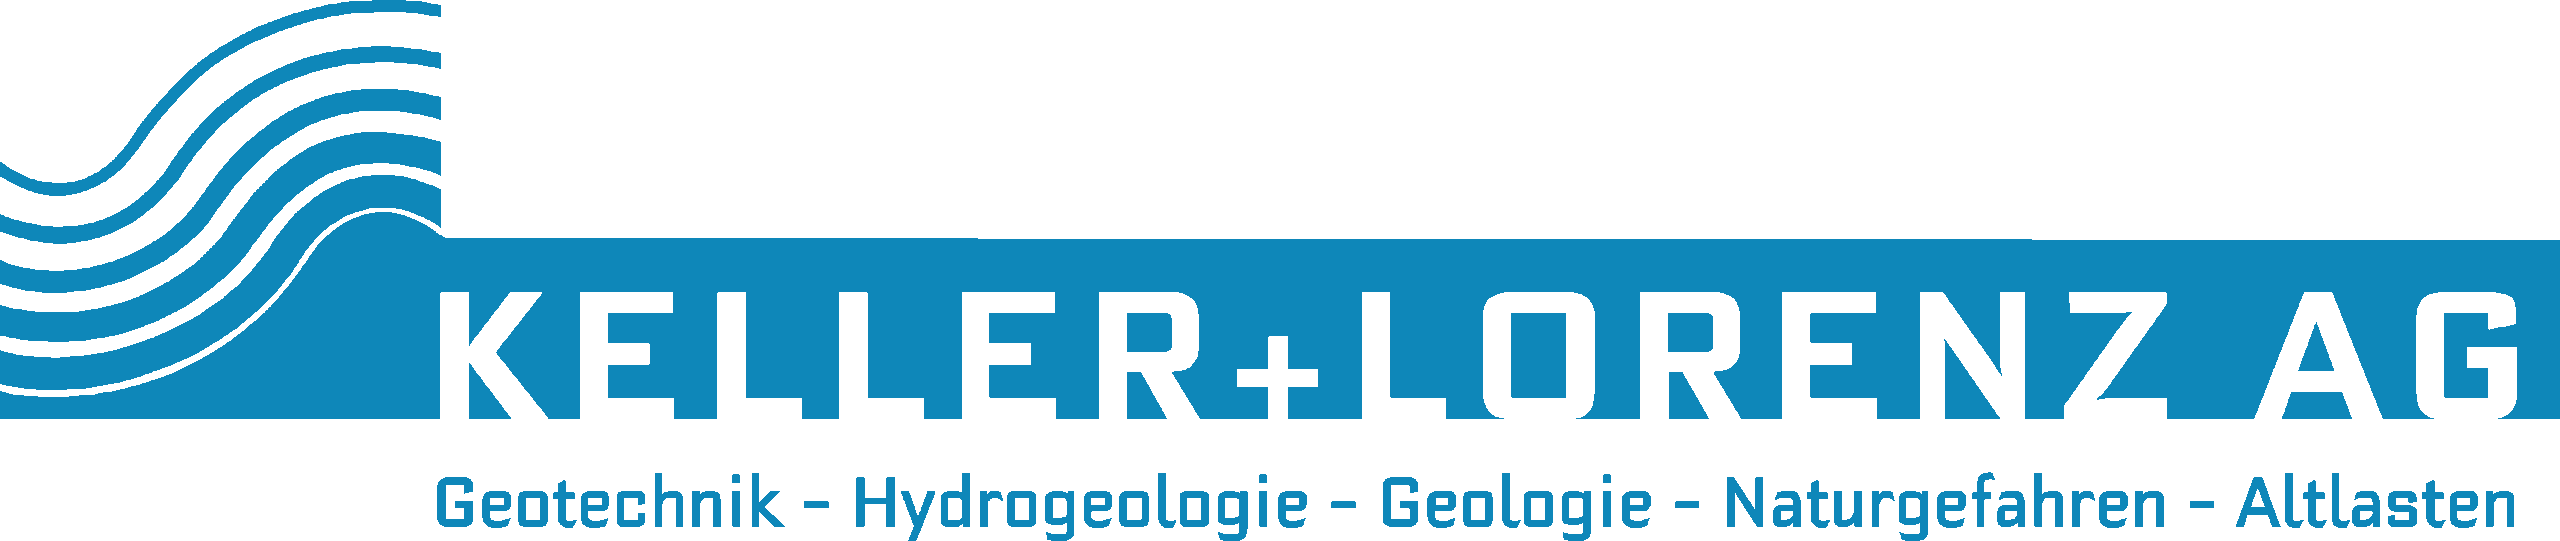 Keller + Lorenz AG Logo